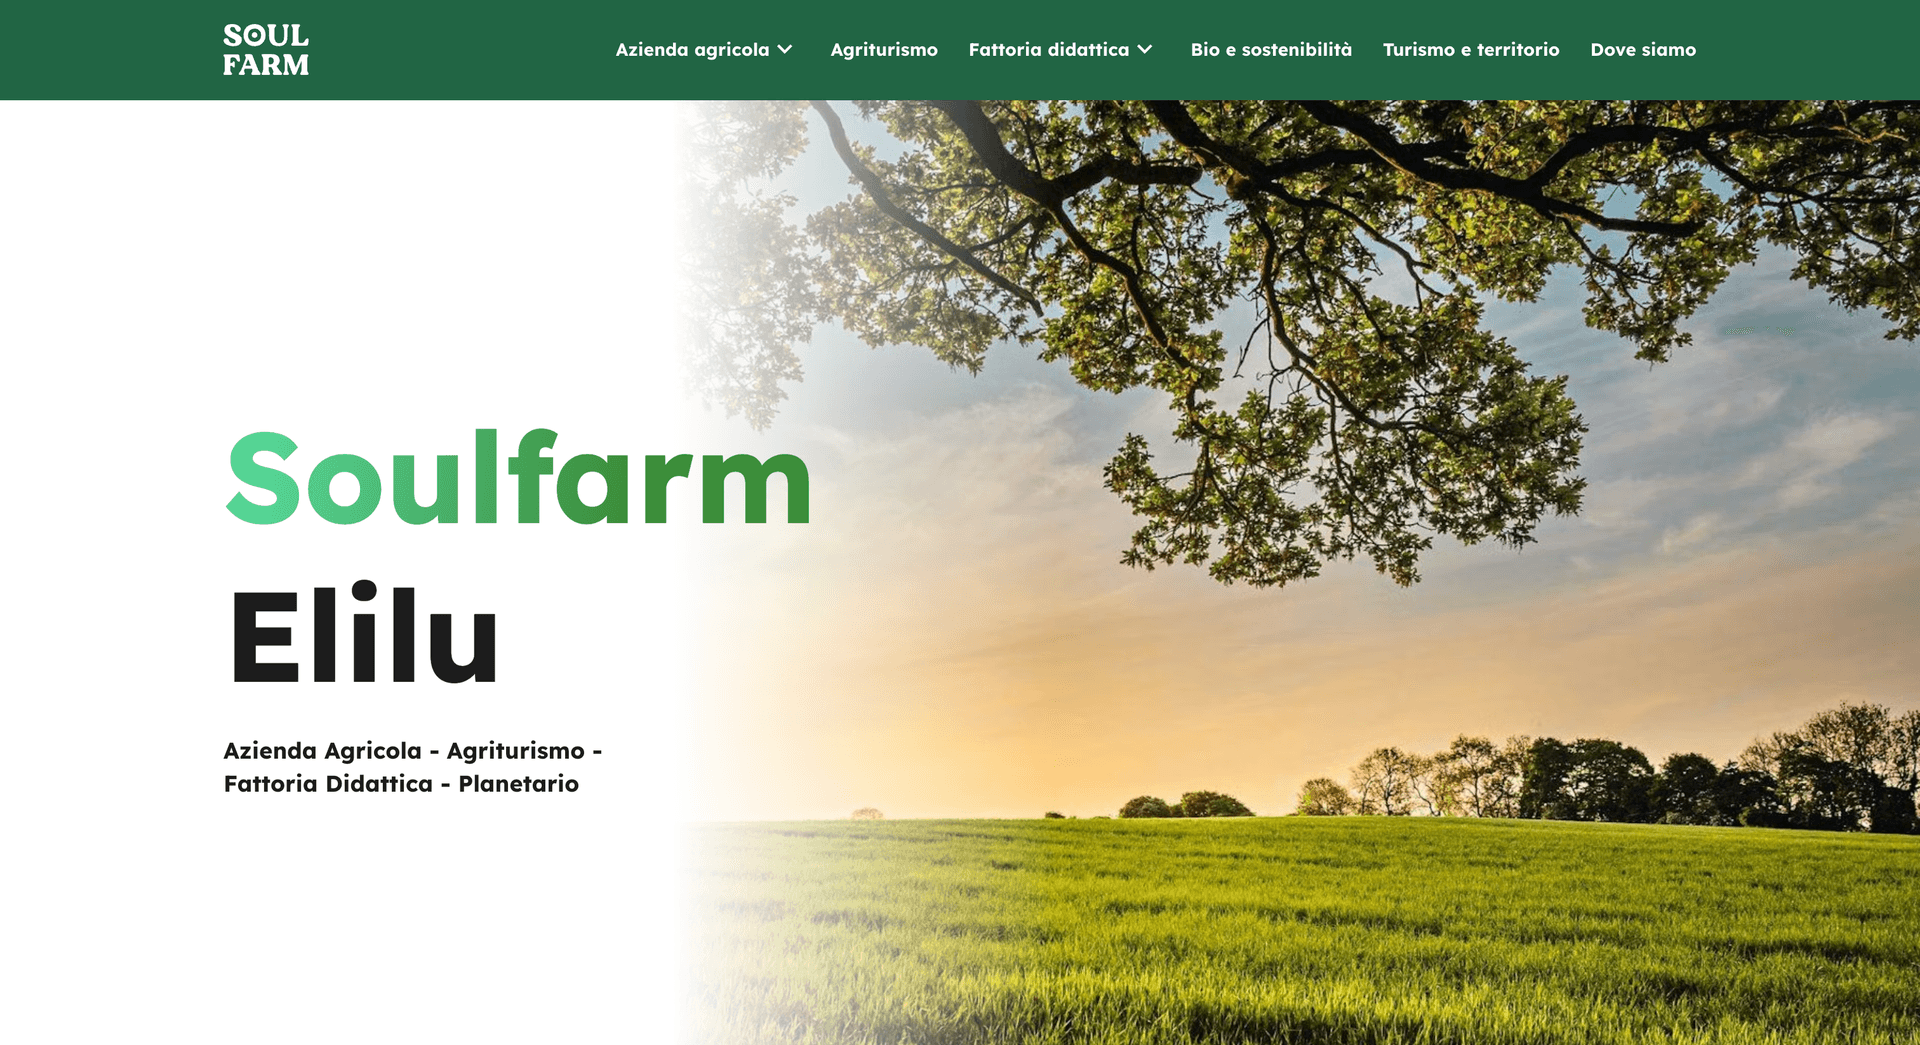 Visit Soulfarm website